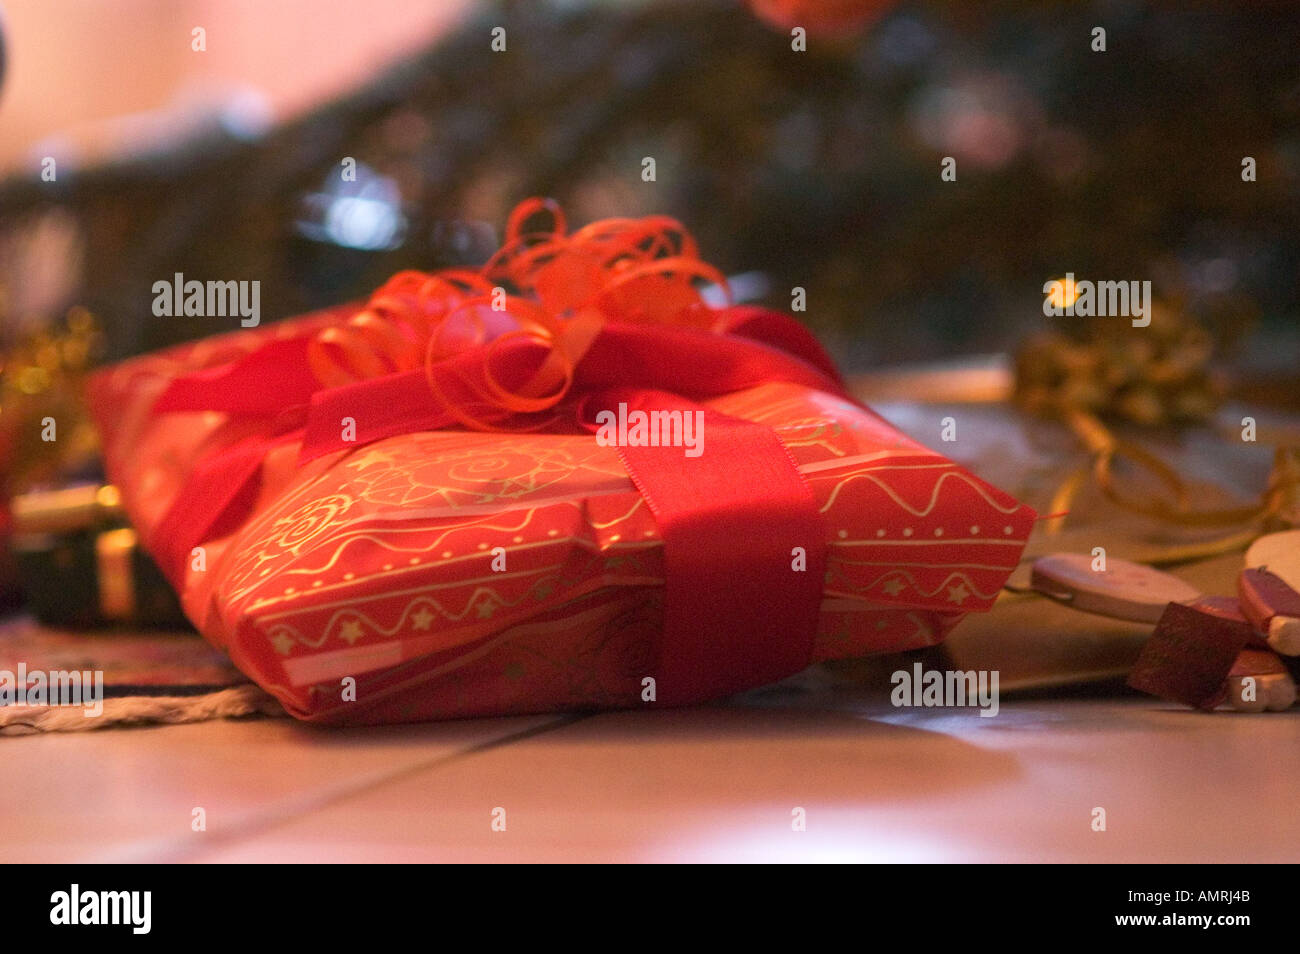 Weihnachten Geschenke unter dem Christbaum chirstmas presents under the Christmastree Stock Photo